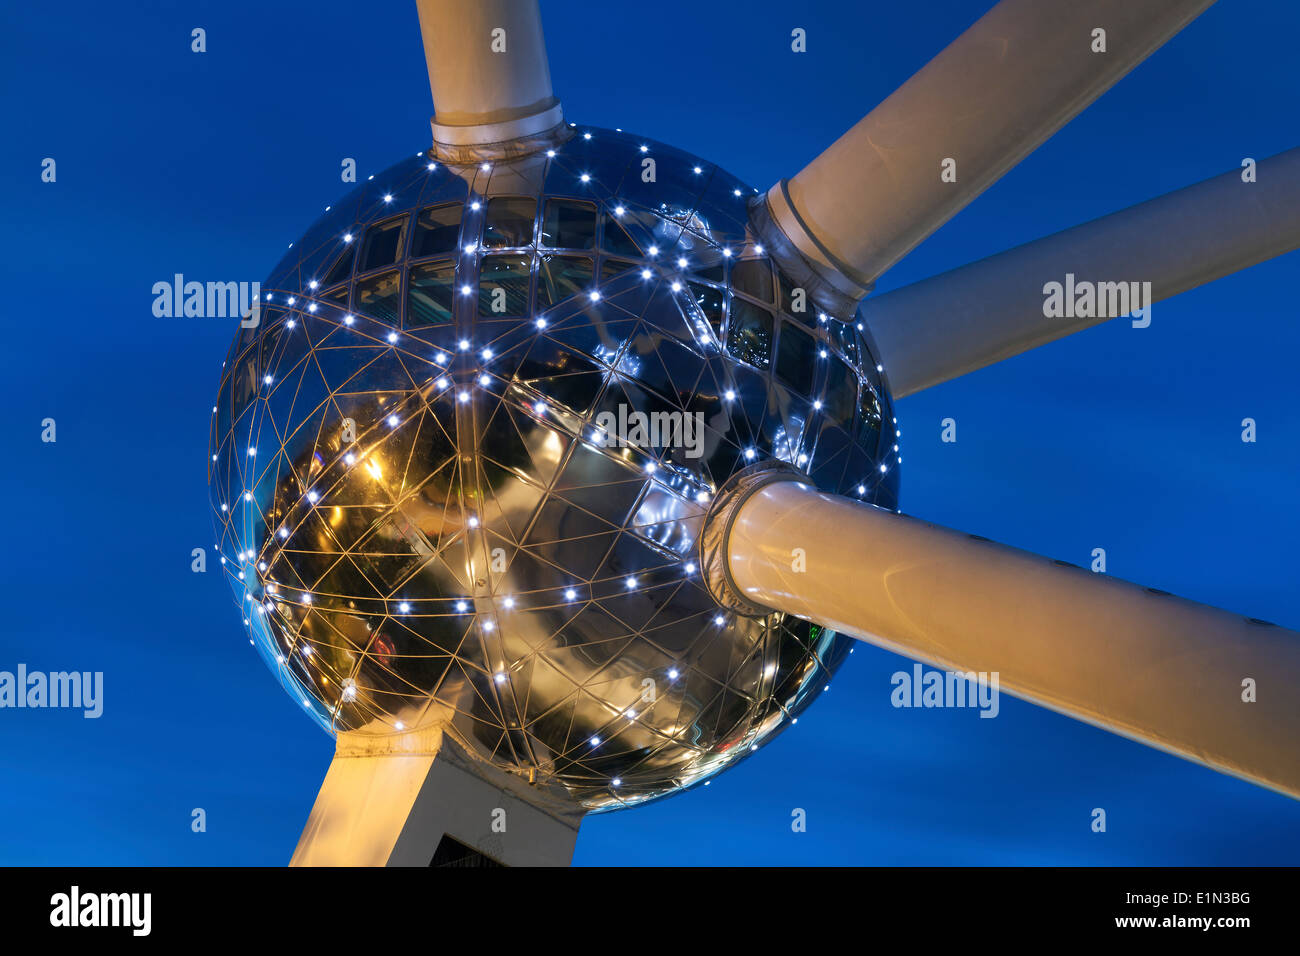 Atomium in Brussels, Belgium Stock Photo